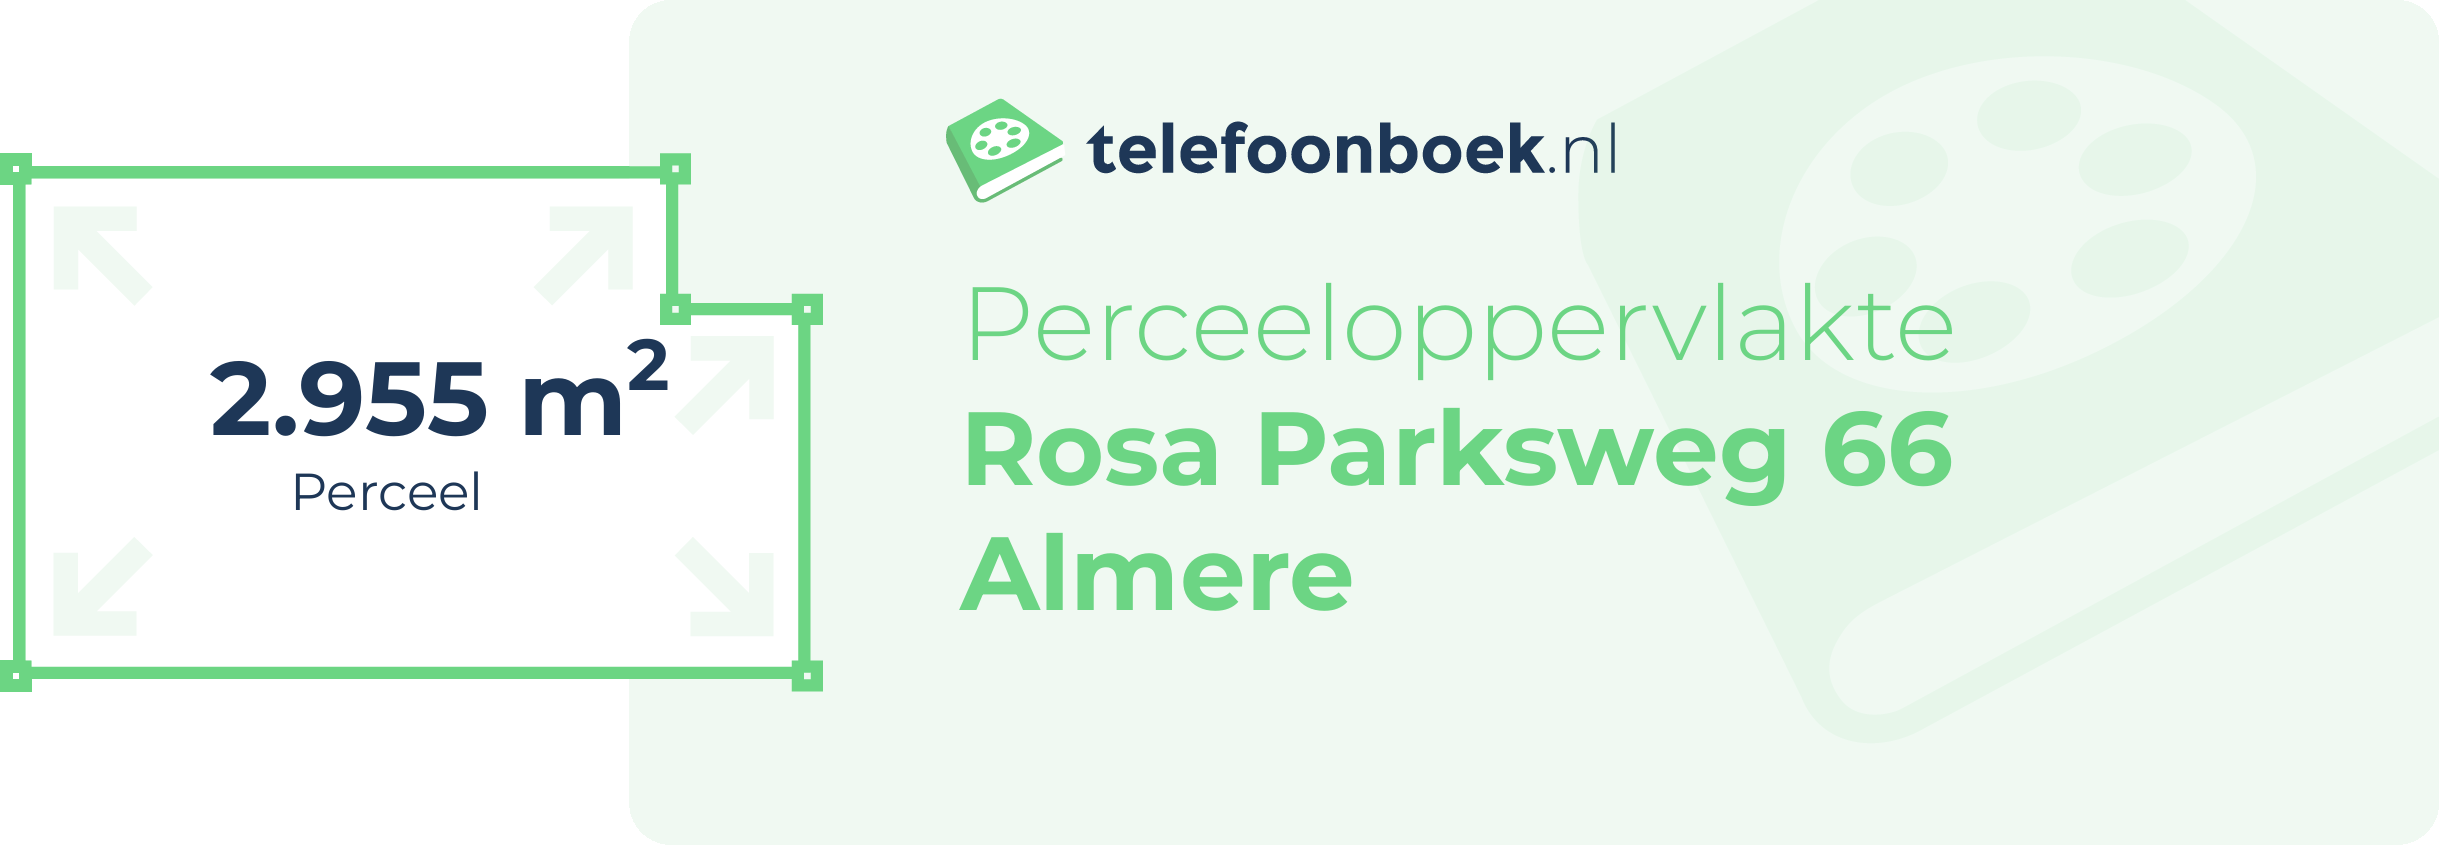 Perceeloppervlakte Rosa Parksweg 66 Almere